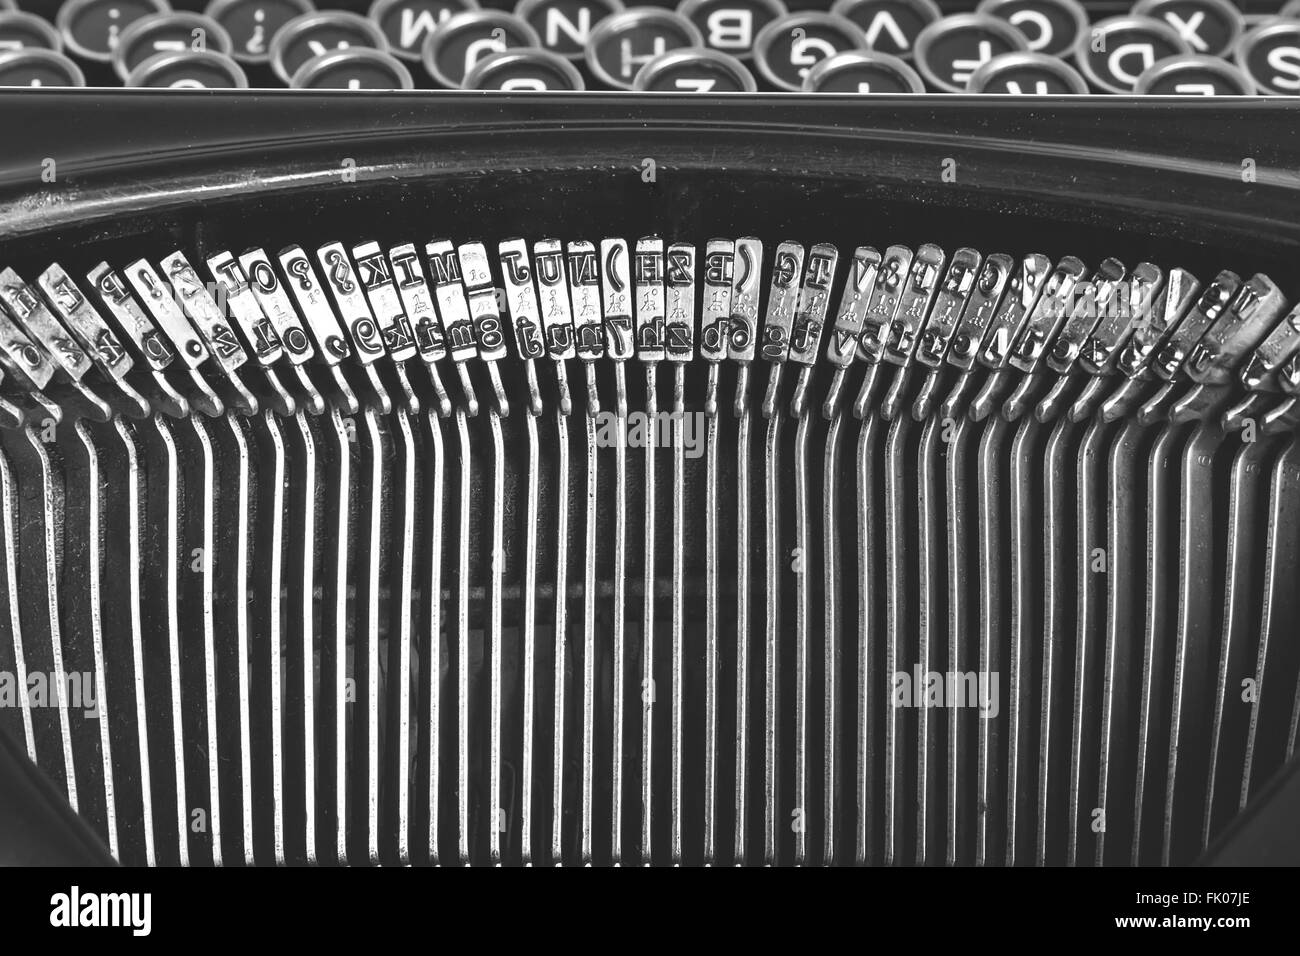 Nahaufnahme der Buchstaben auf einer alten Schreibmaschine Stockfoto